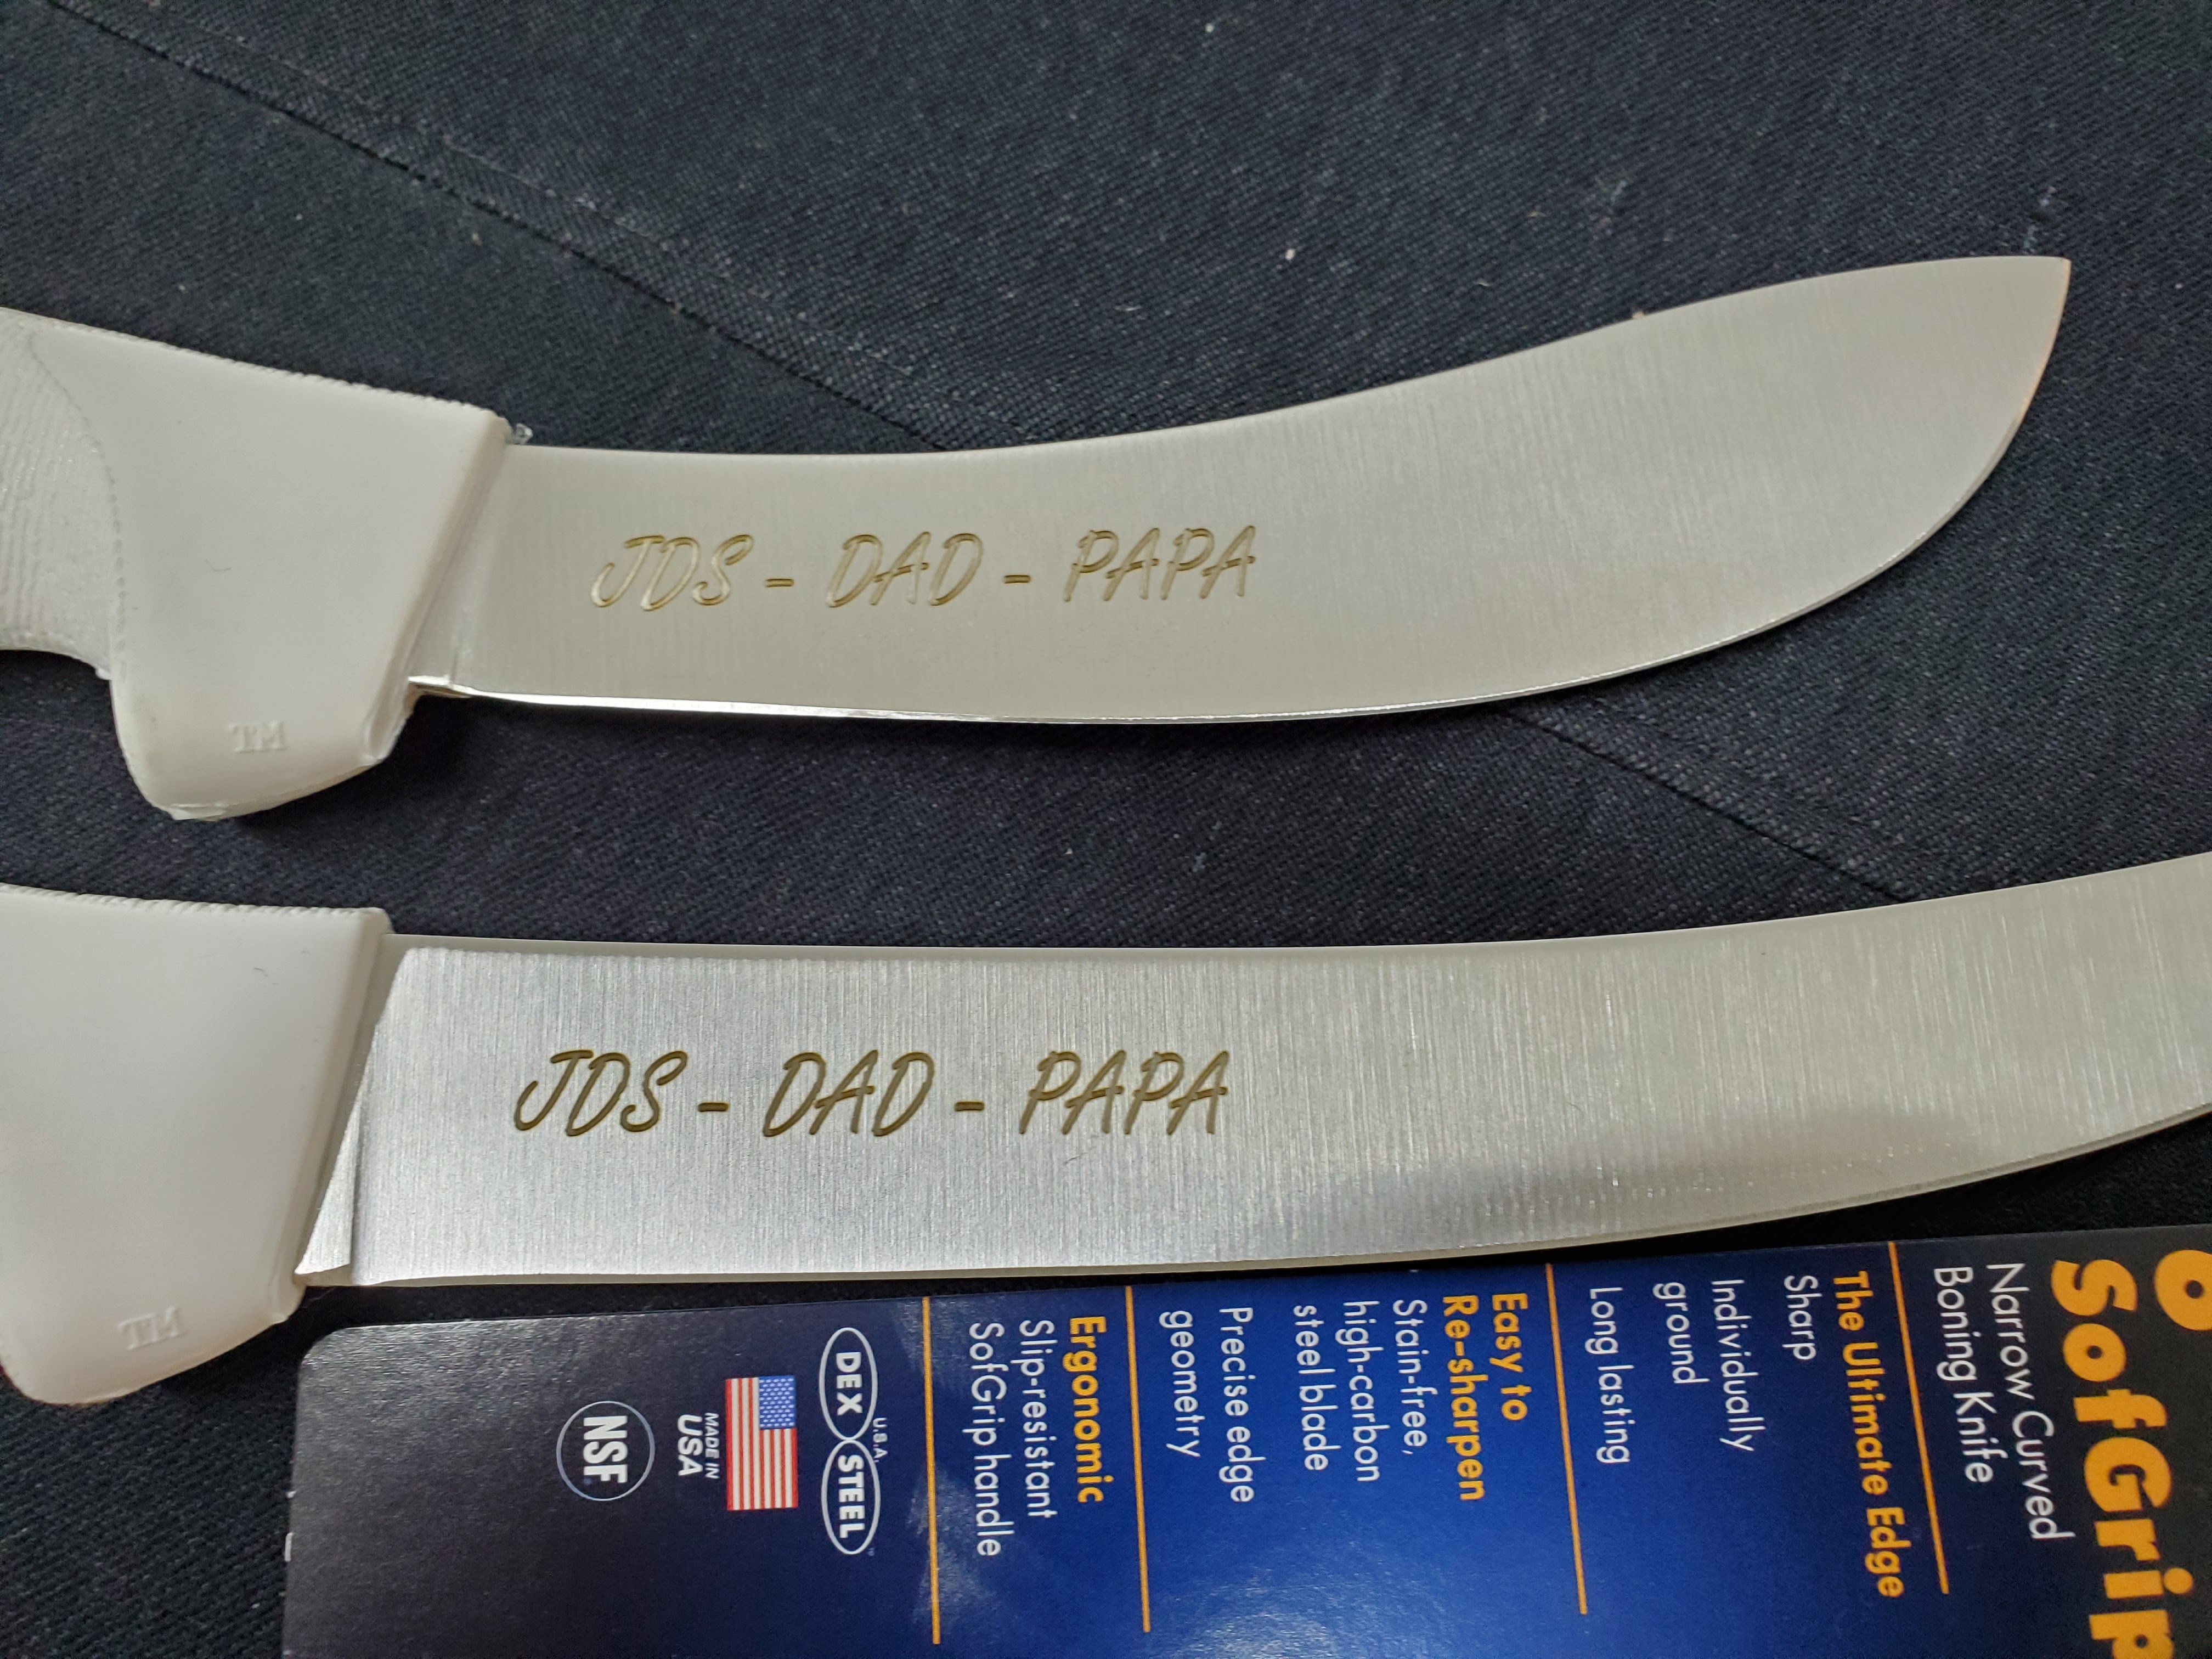 custom-engraved-dexter-knives-3-.jpg